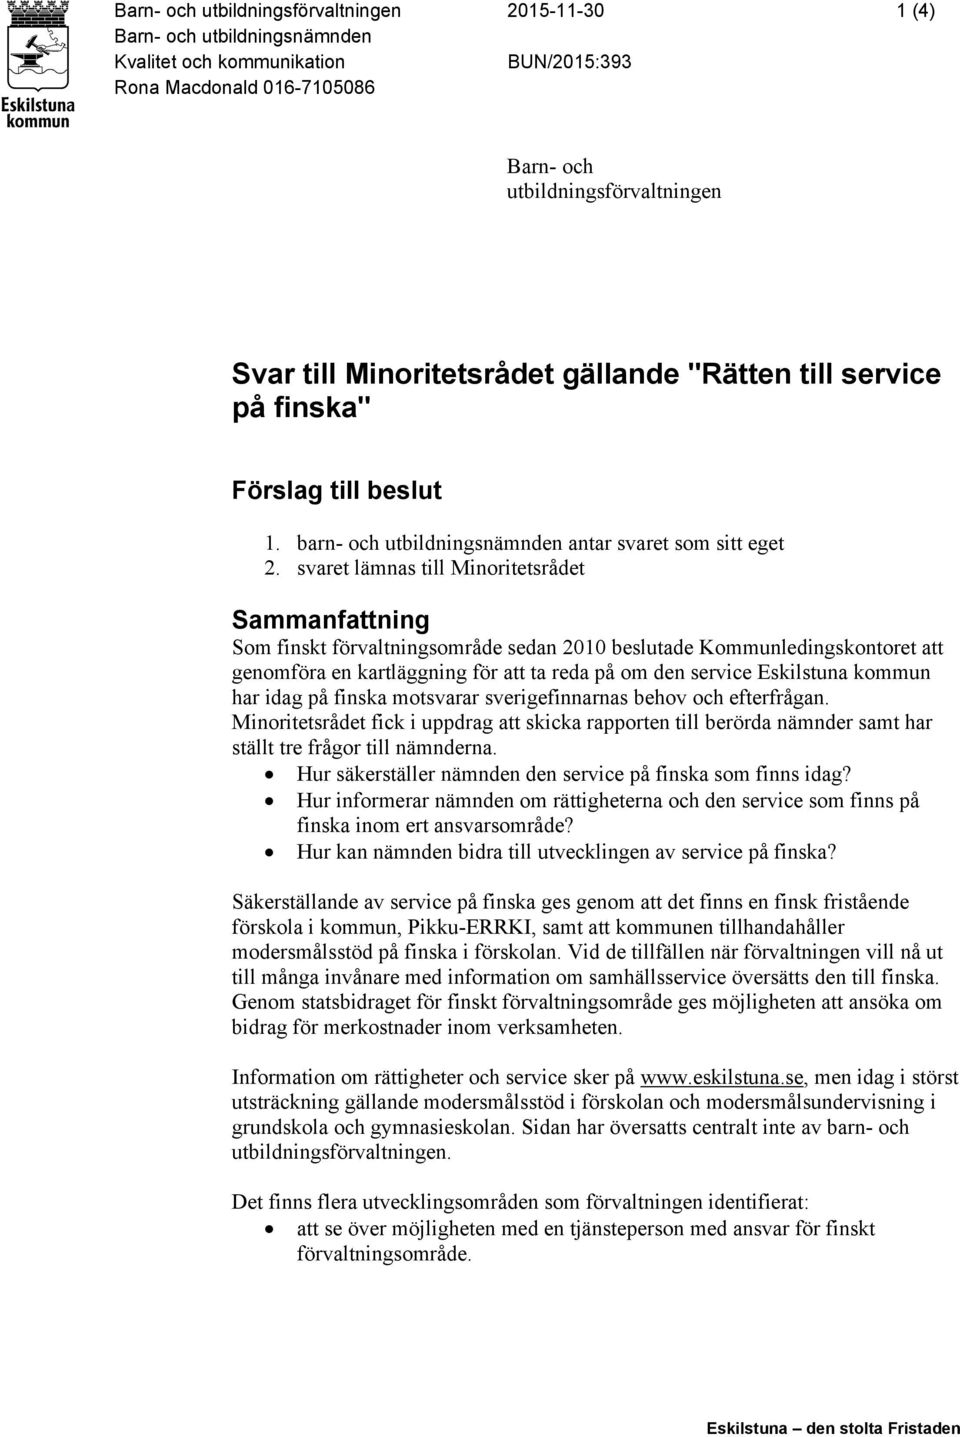 svaret lämnas till Minoritetsrådet Sammanfattning Som finskt förvaltningsområde sedan 2010 beslutade Kommunledingskontoret att genomföra en kartläggning för att ta reda på om den service Eskilstuna